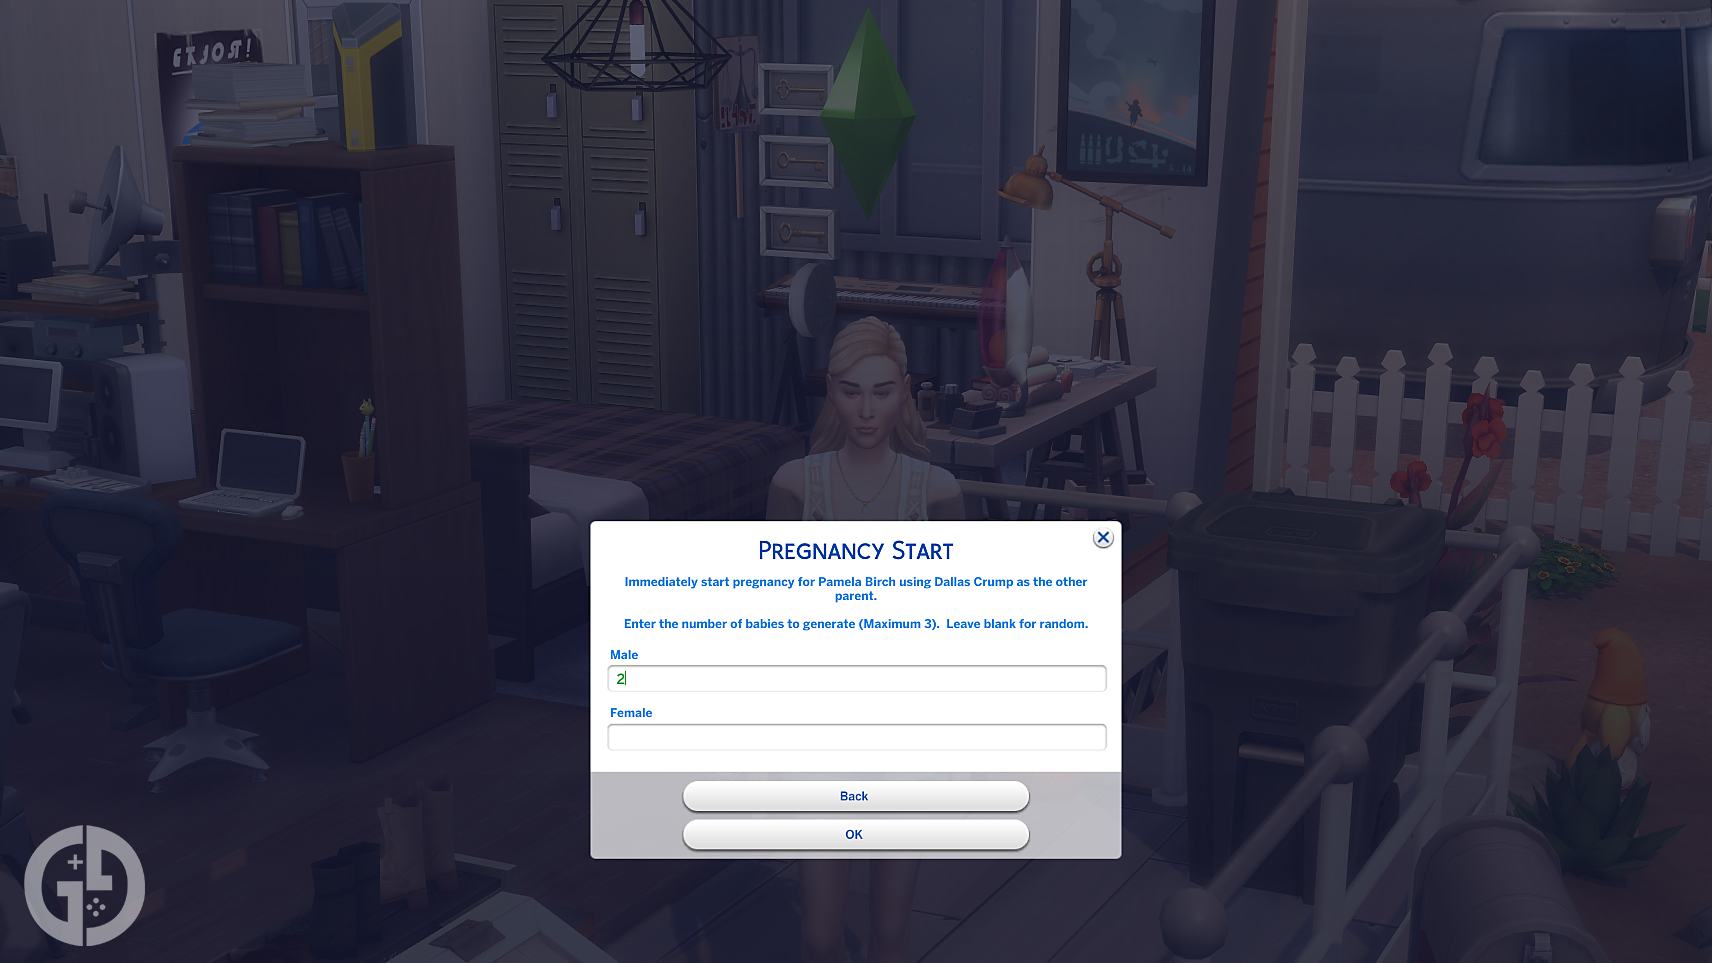 Читы для беременных в The Sims 4: как вызвать роды, родить близнецов и многое другое